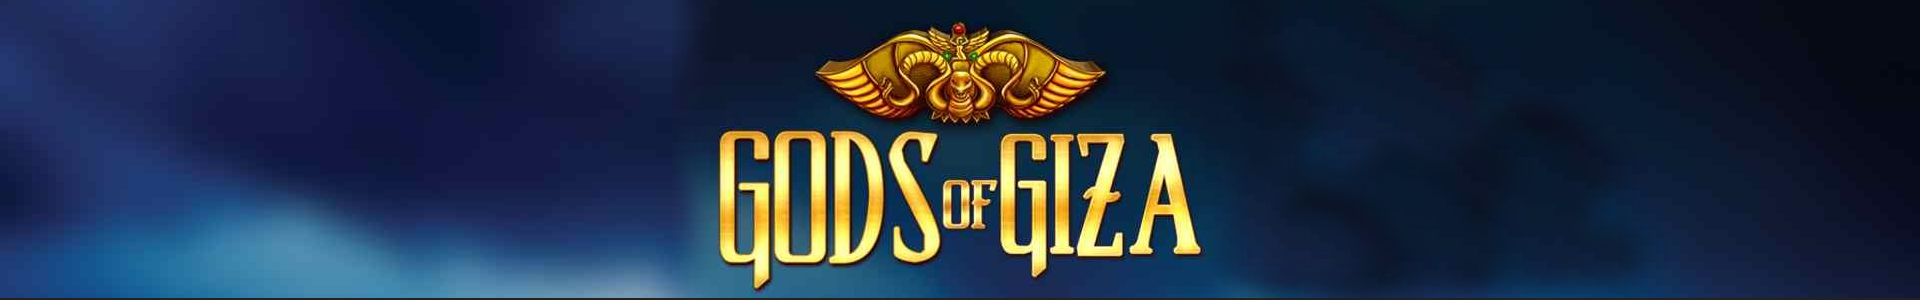 Логотип игрового автомата Боги Гизы.